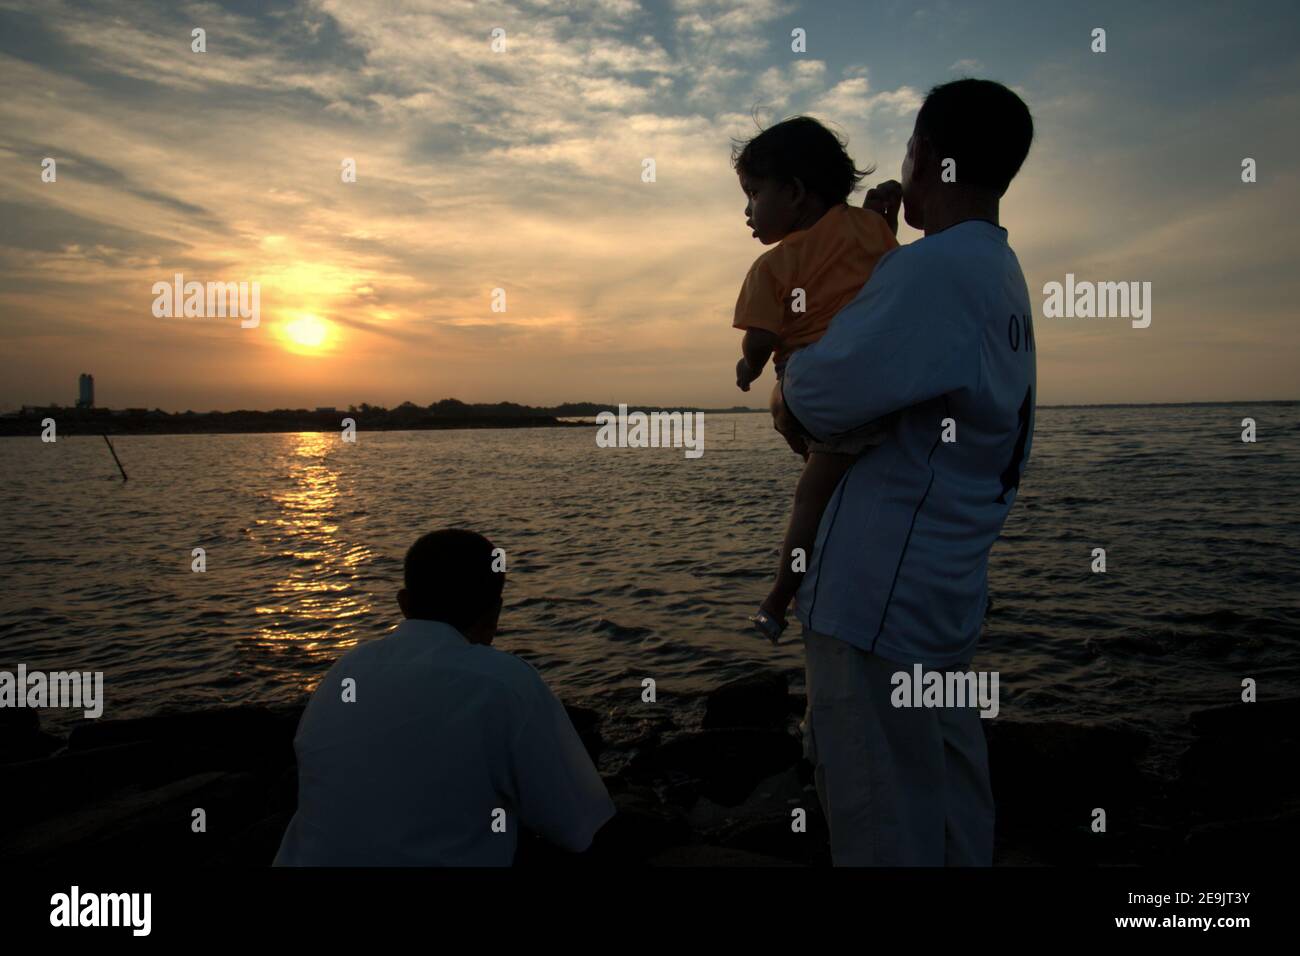 Les personnes ayant une activité de loisirs, appréciant l'atmosphère relaxante avant le coucher du soleil sur un terrain récupéré à la plage de Pantai Indah Kapuk, près d'un complexe résidentiel dans la zone côtière de Jakarta, Indonésie. Banque D'Images